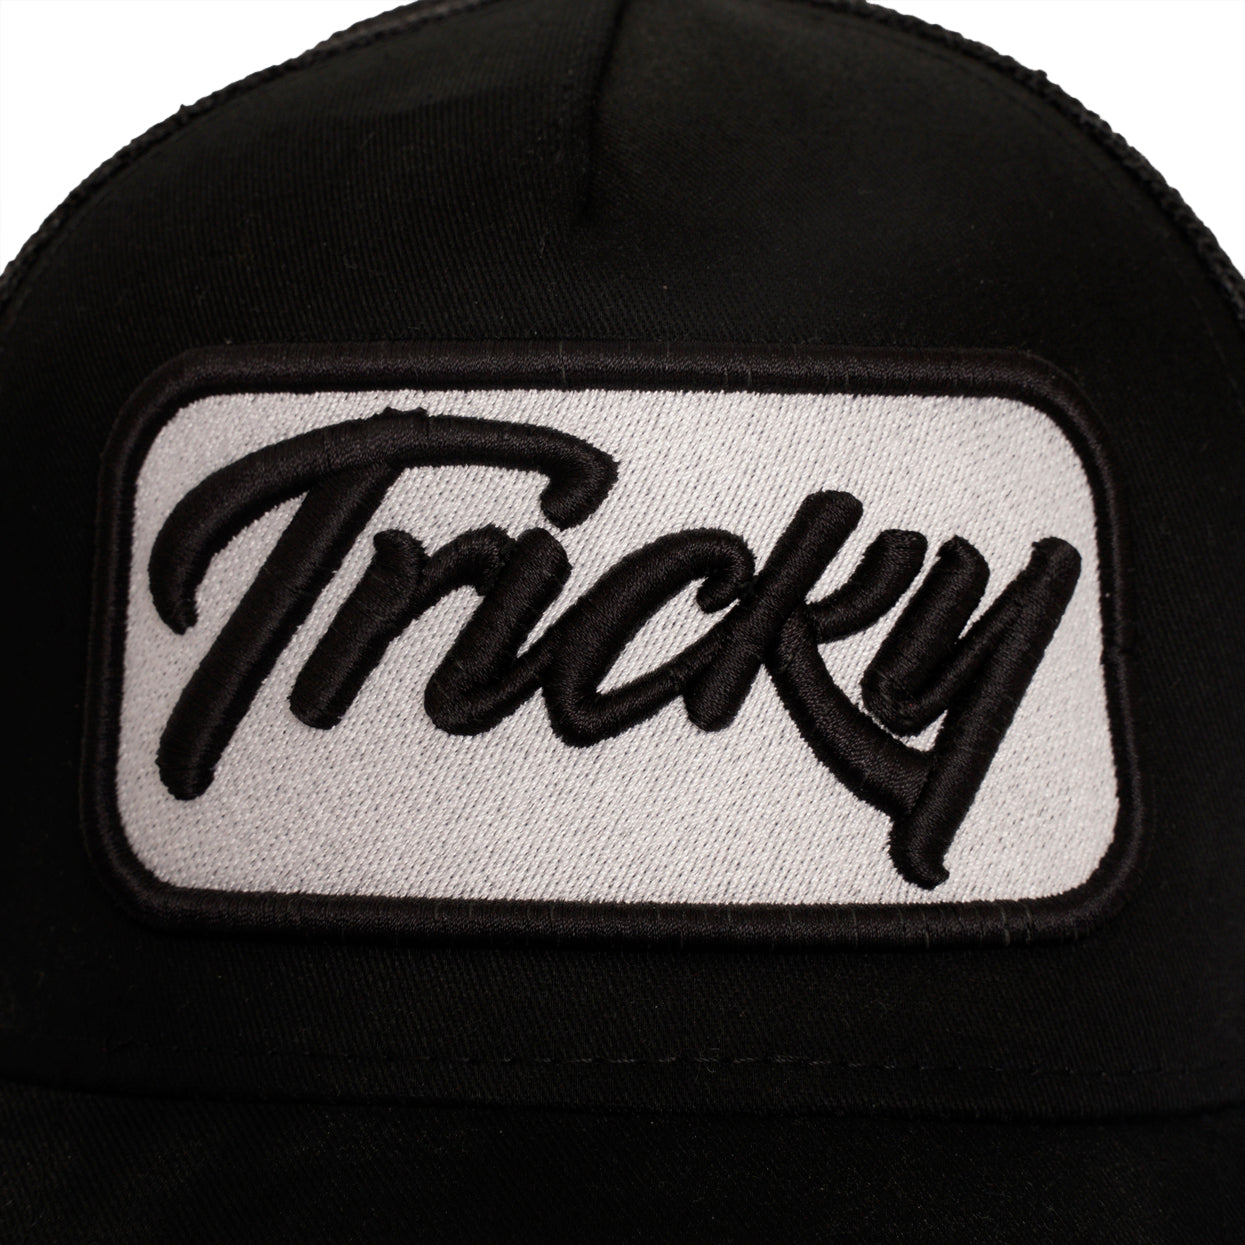 TRICKY PLATE LOGO MESH TRUCKER CAP BLACK